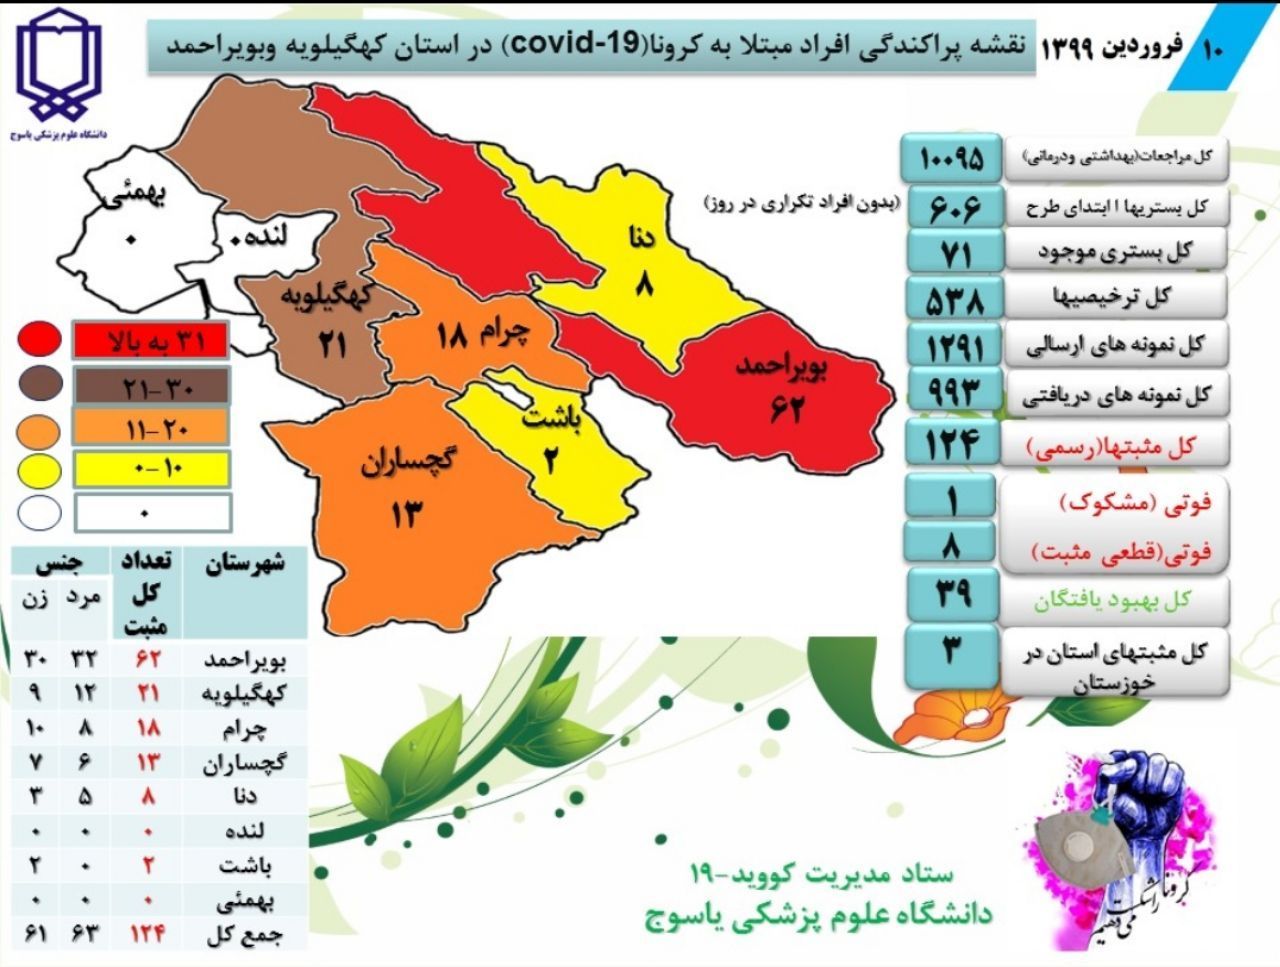 آخرین آمار مبتلایان به کرونا در ایران / کهگیلویه و بویراحمد ، فروردین 10 _ کرونا 5